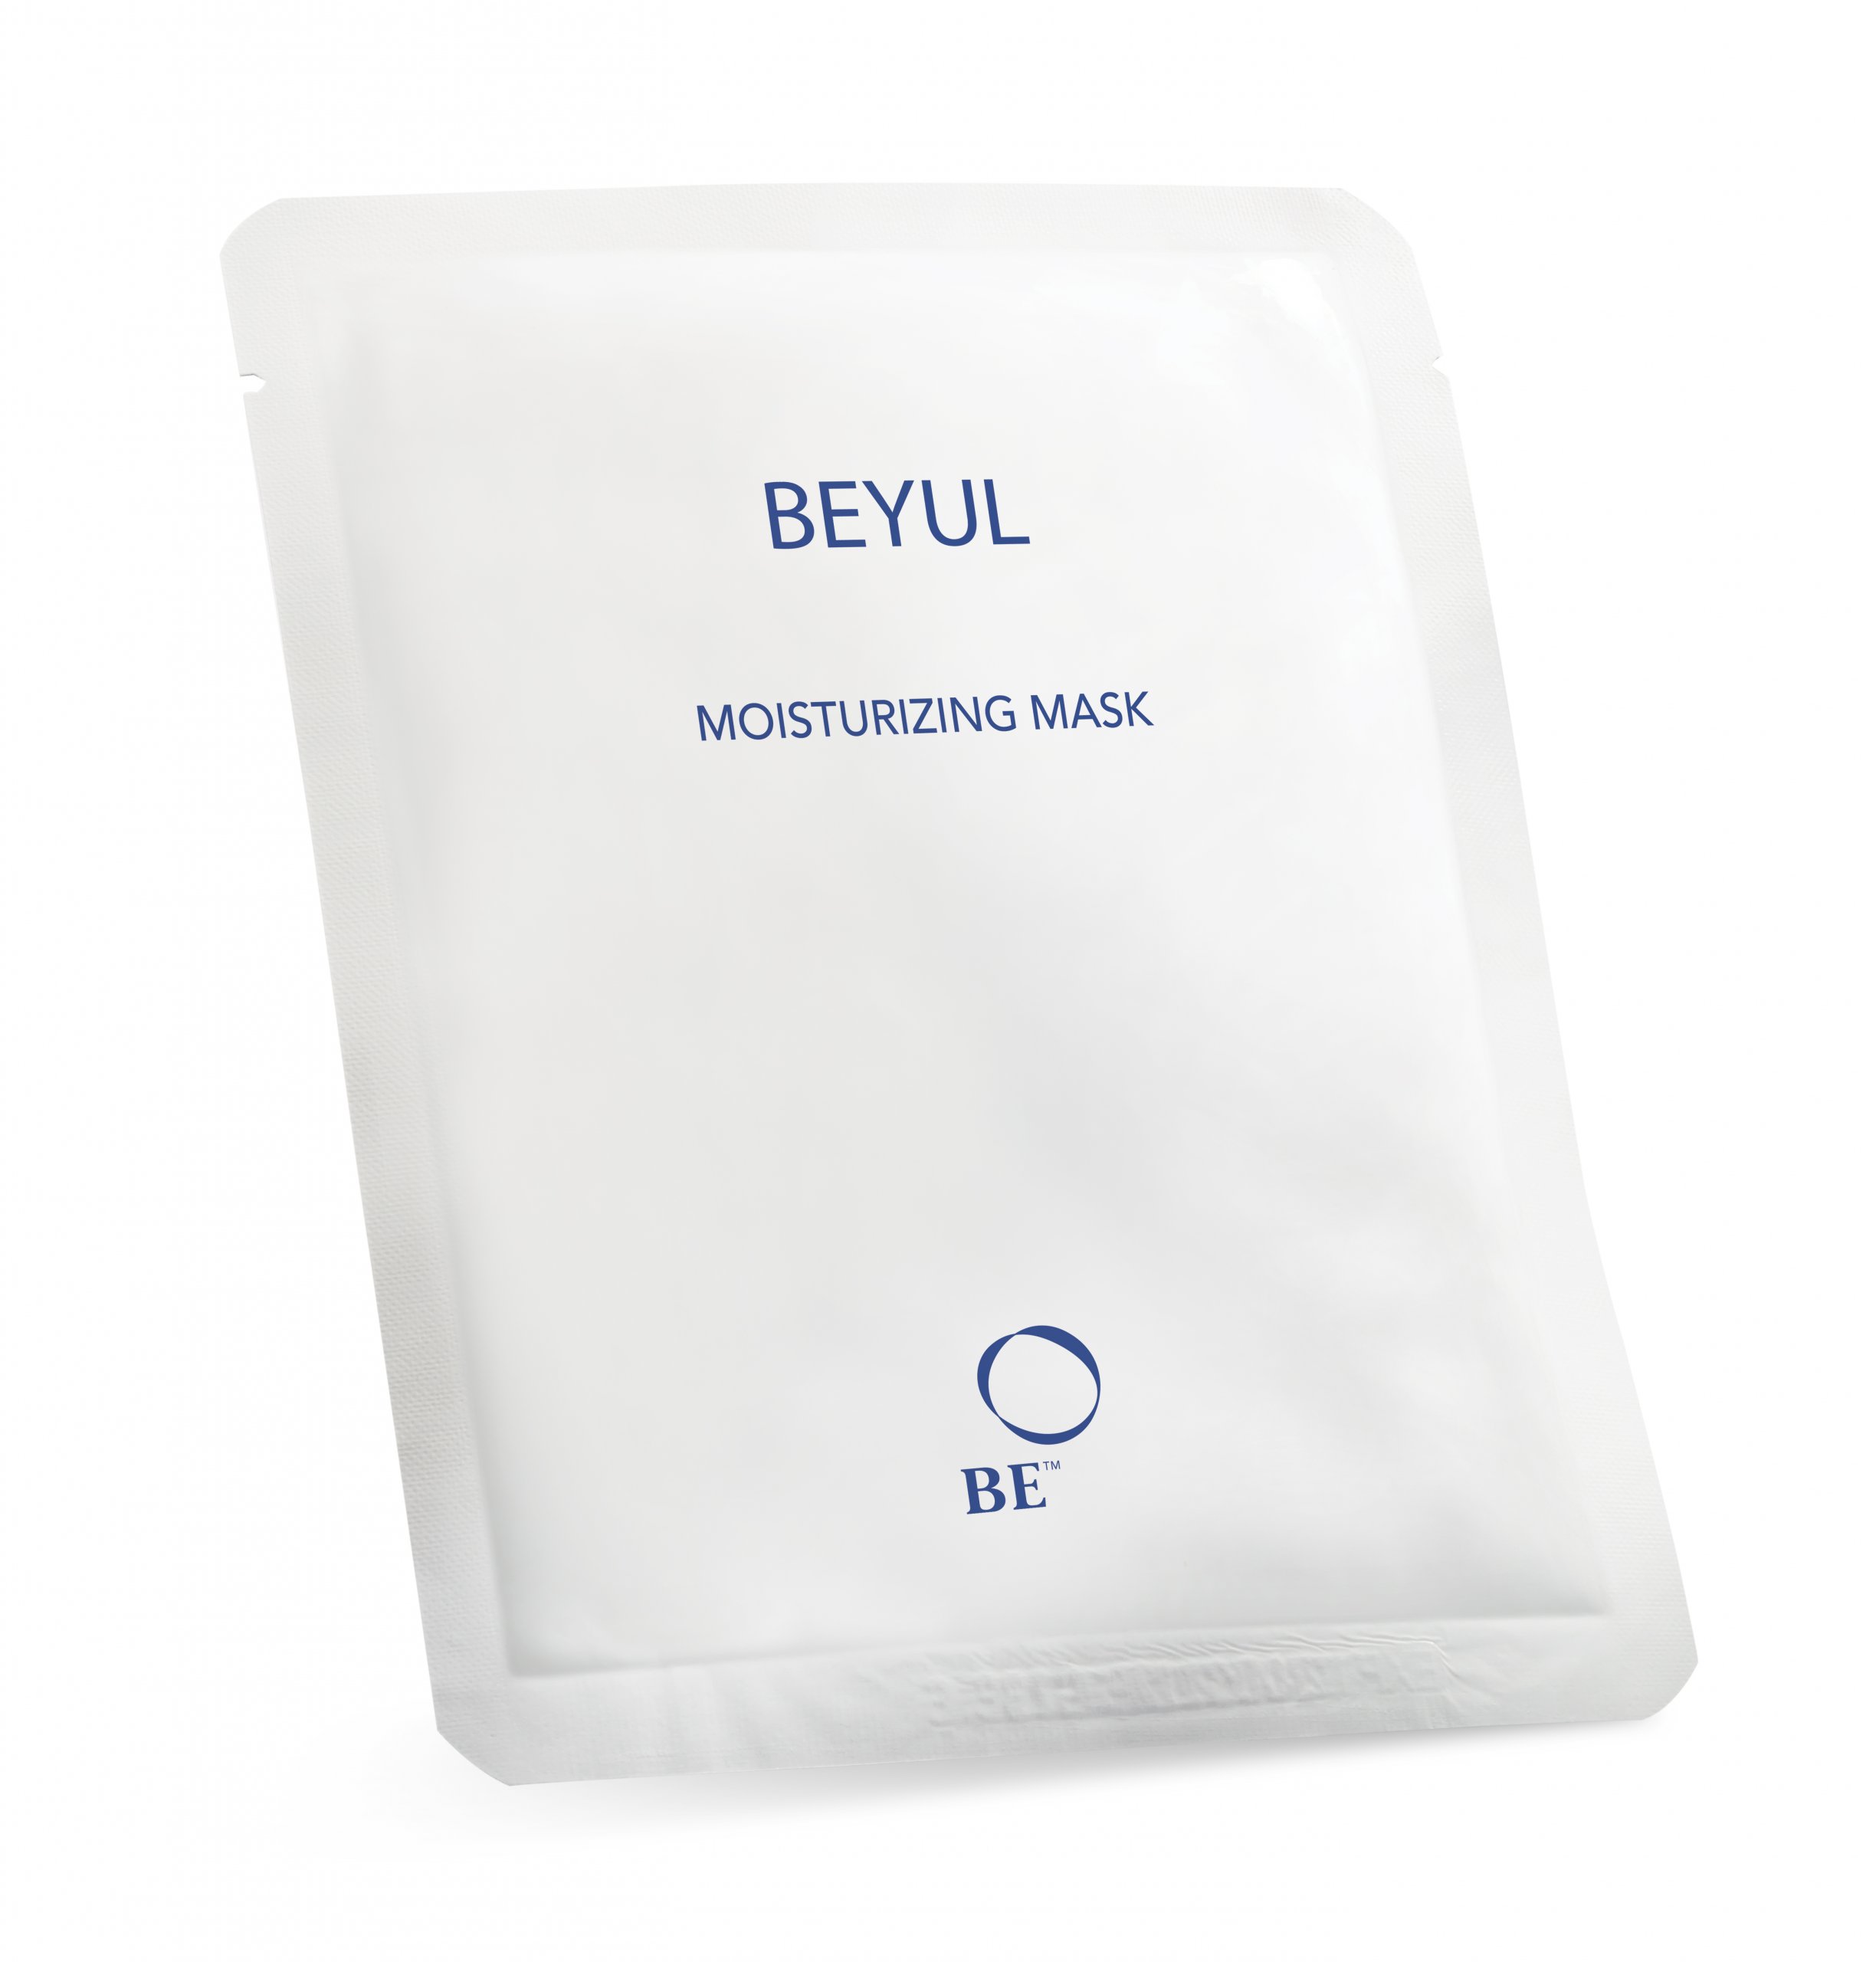 BEYUL-Moisturizing-Mask-scaled